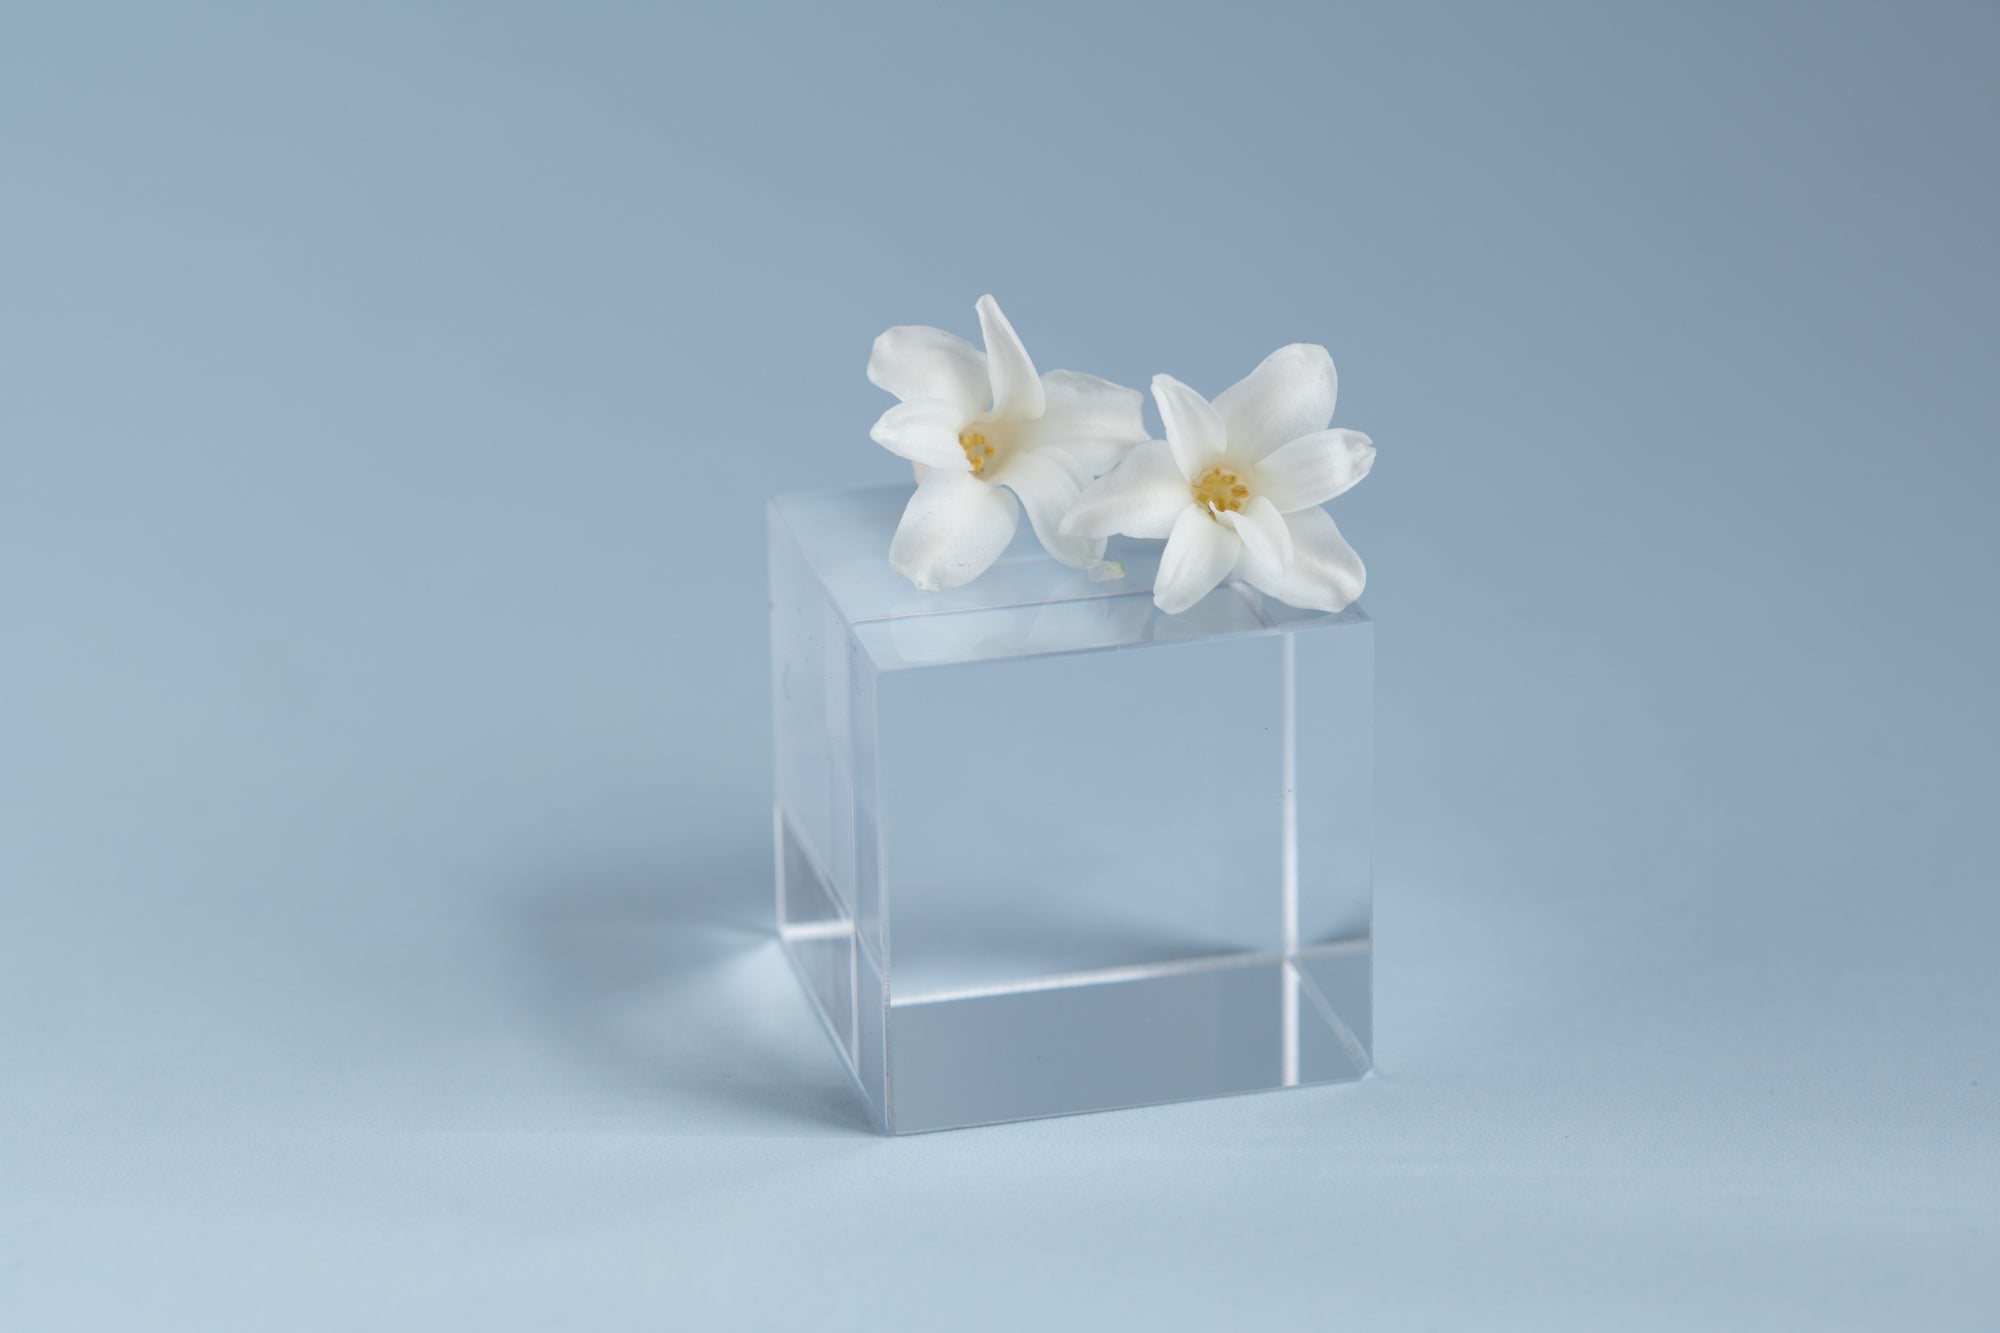 Flower petals ontop of a clear cube